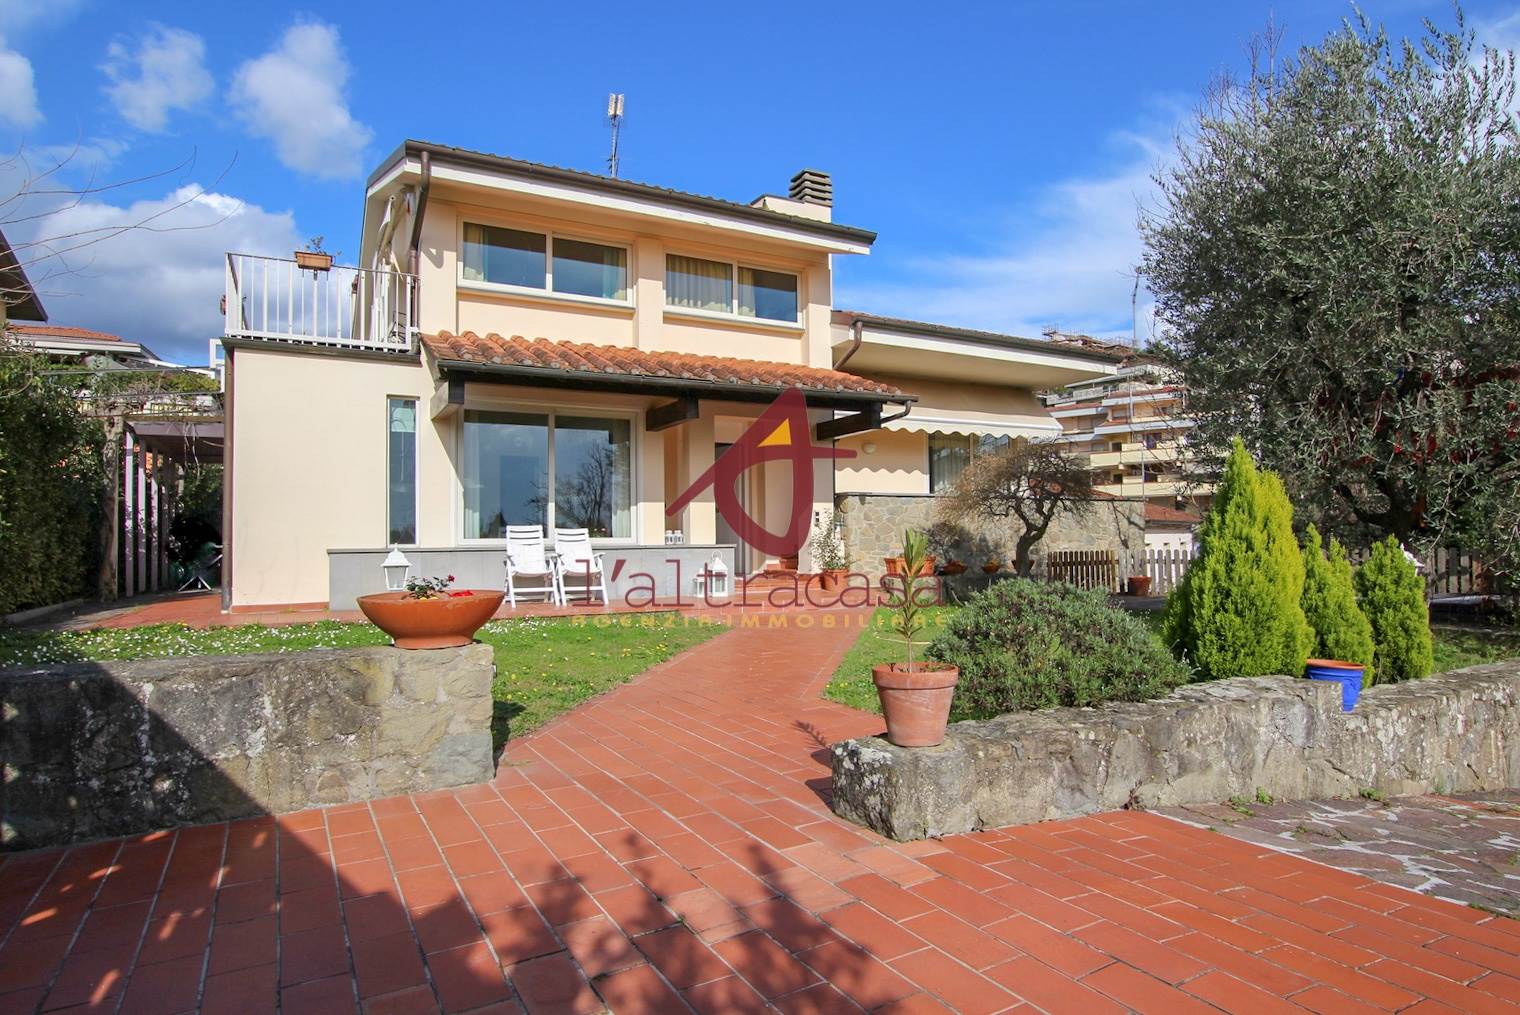 Villa in vendita a Montecatini-Terme, 9 locali, prezzo € 650.000 | PortaleAgenzieImmobiliari.it